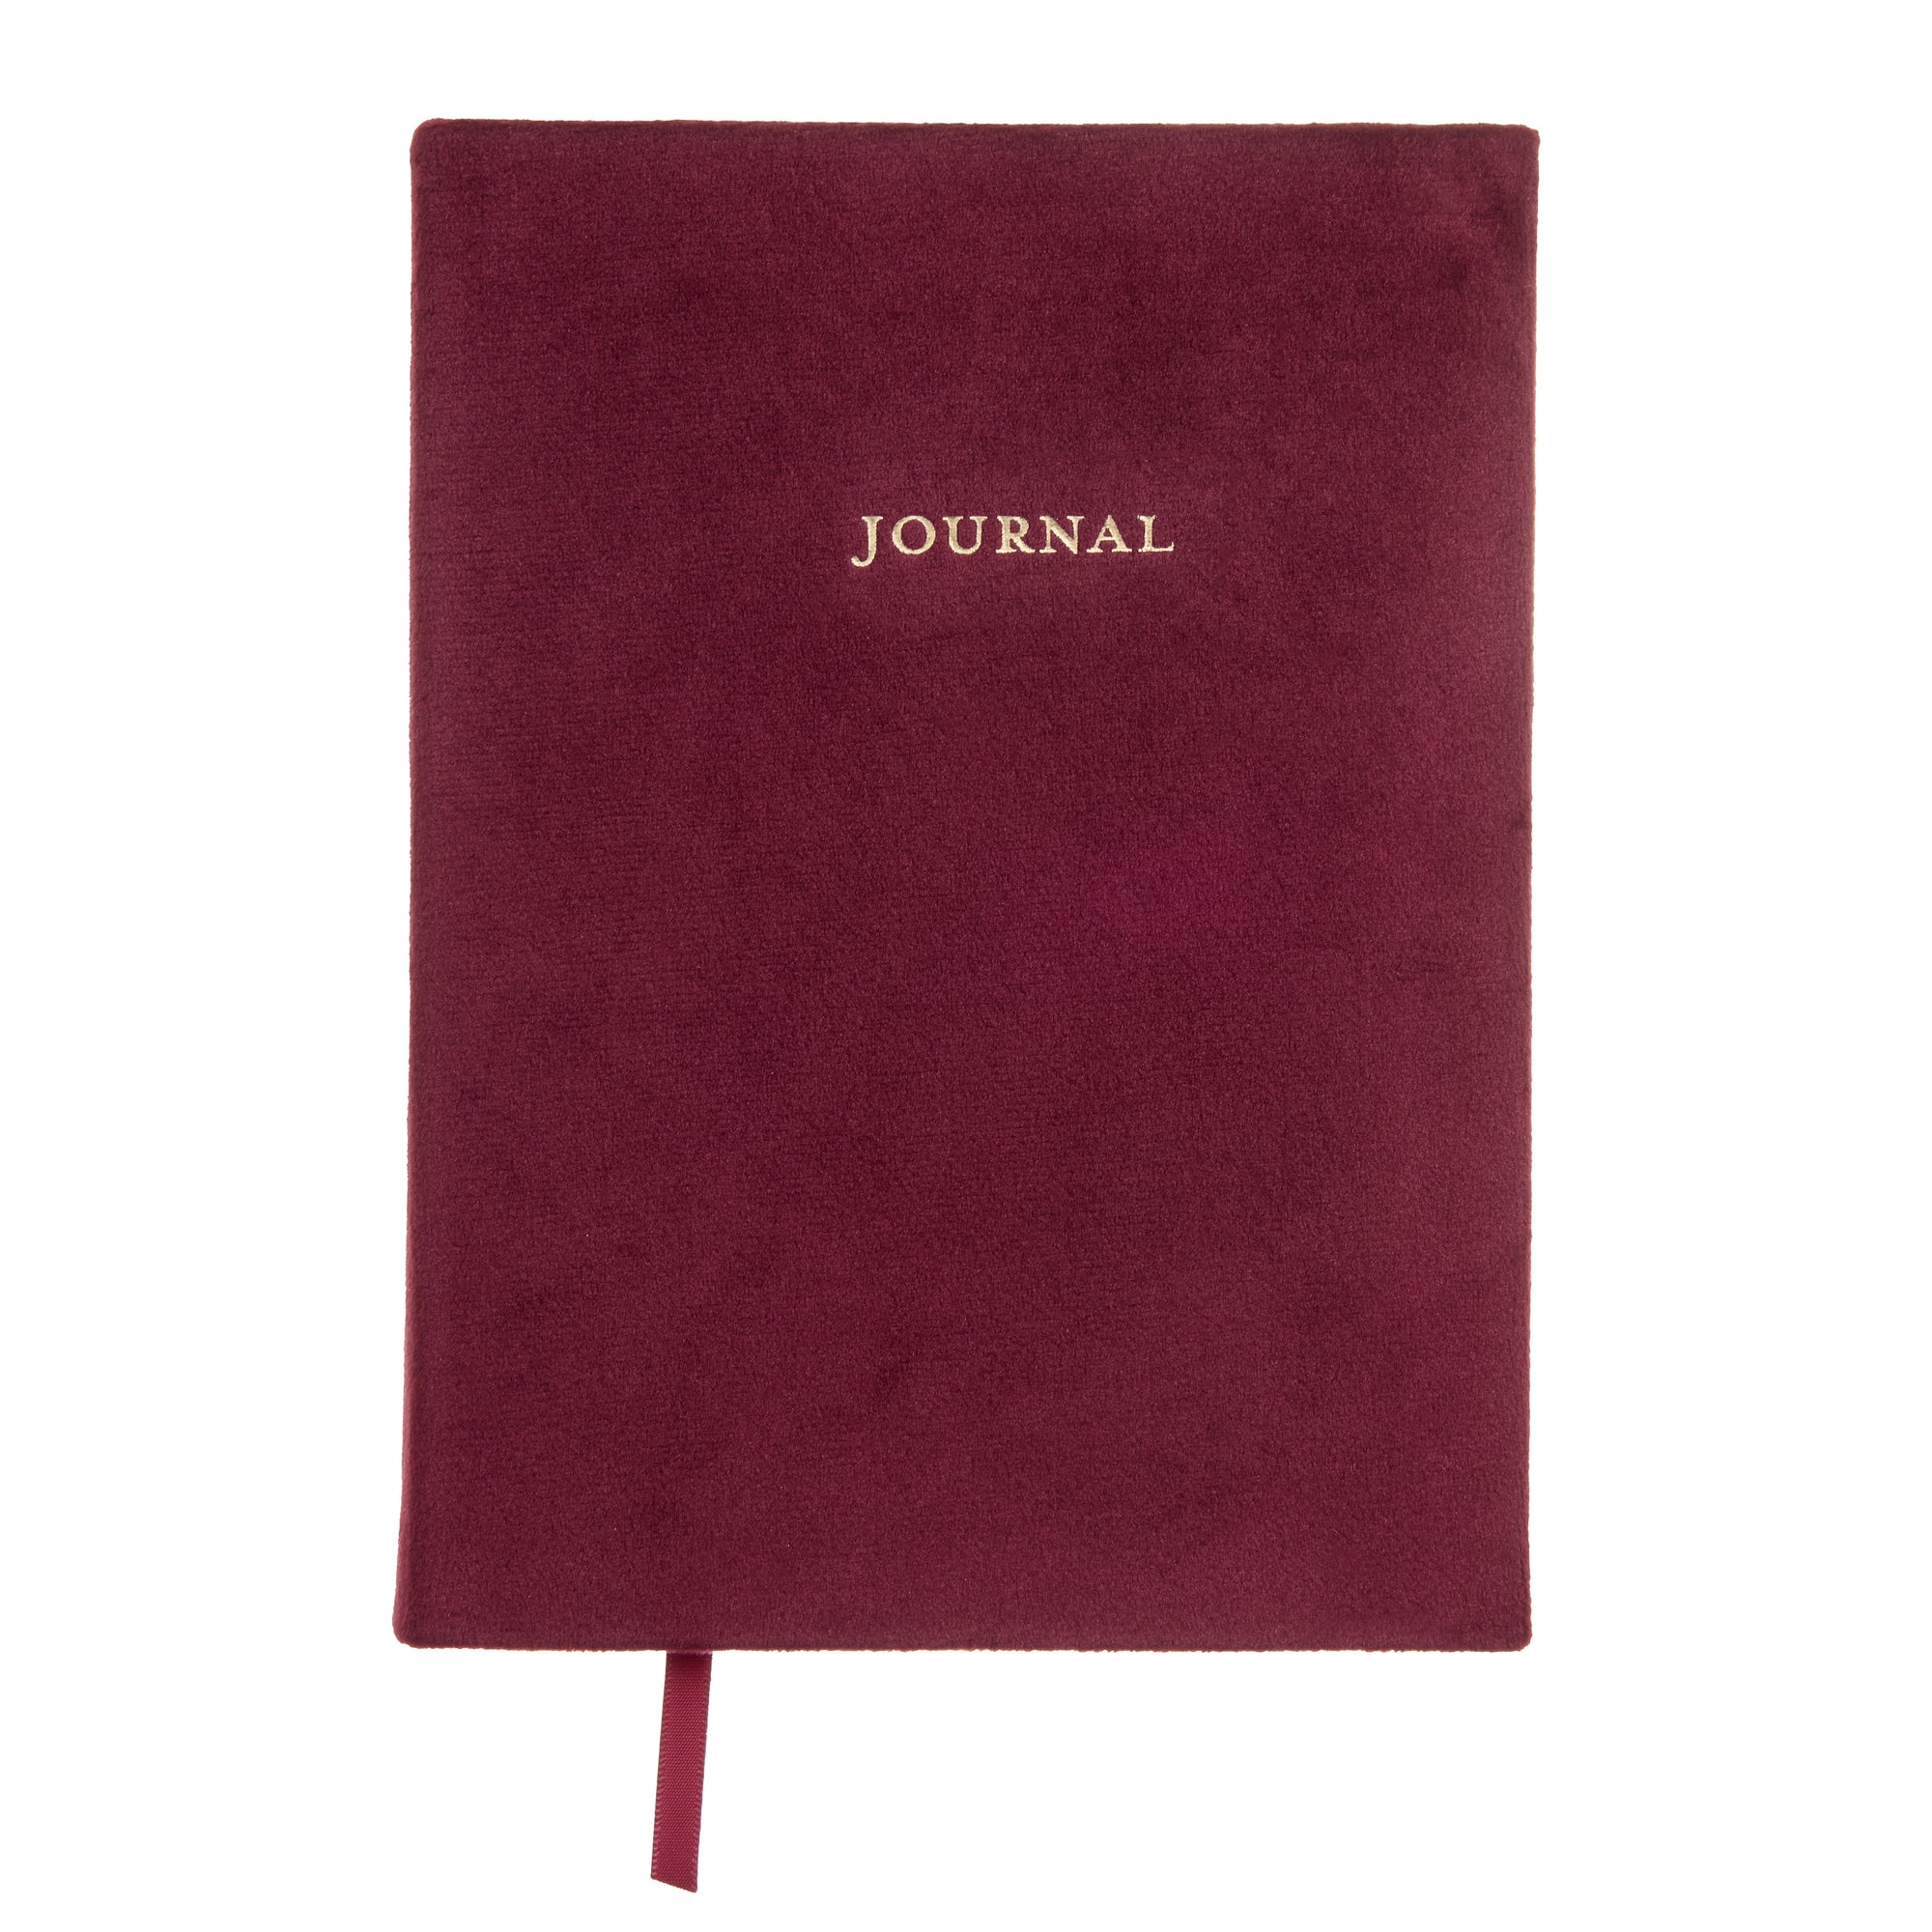 Burgundy Crushed Velvet Journal Gartner Studios Notebooks 88463